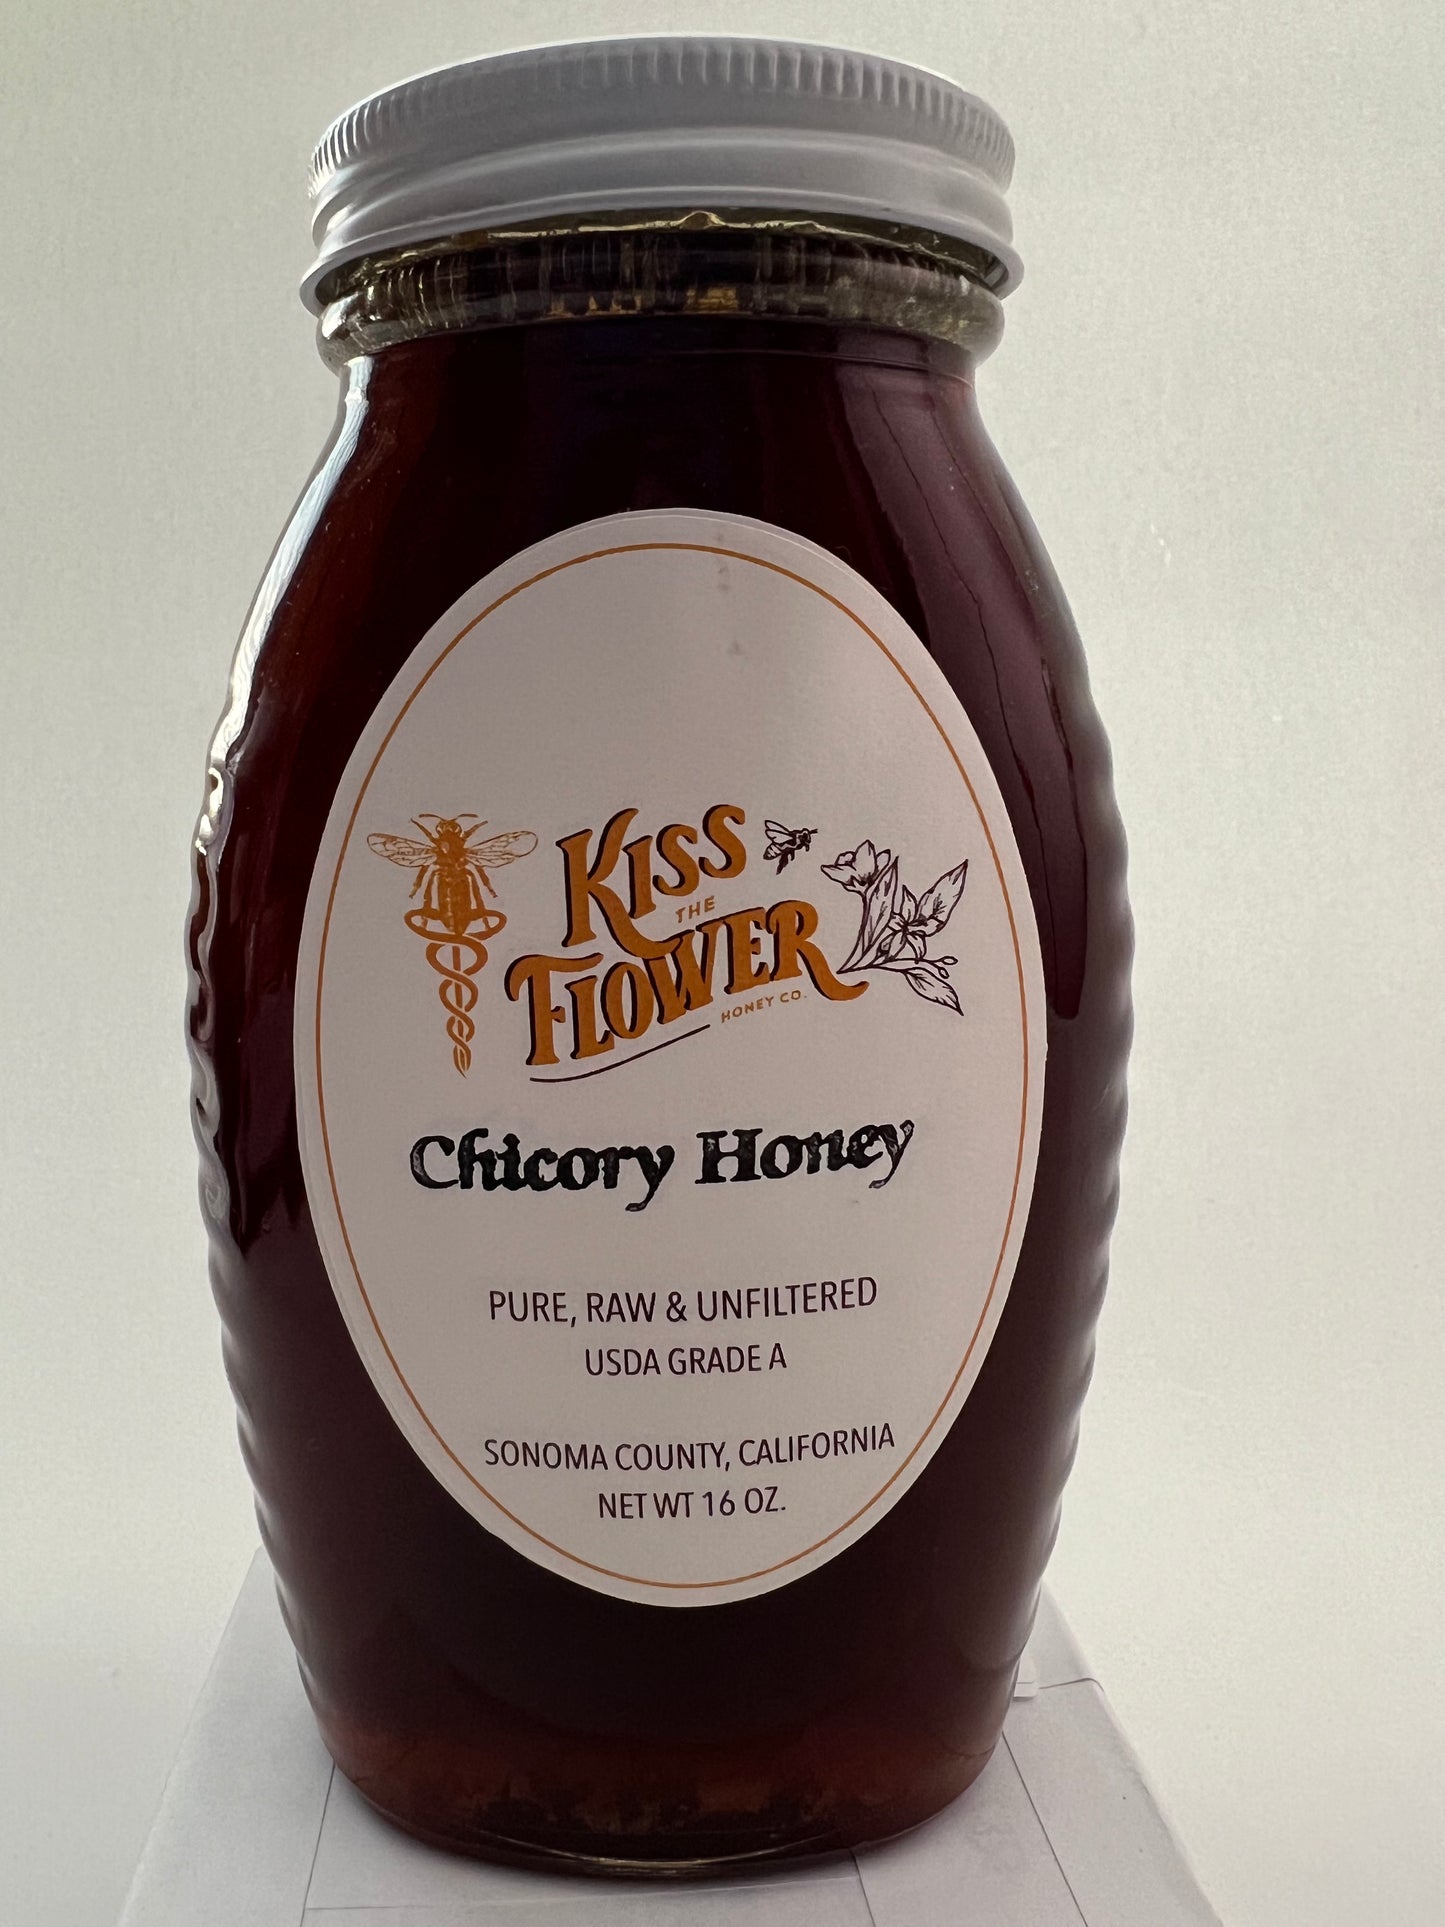 Chicory Honey